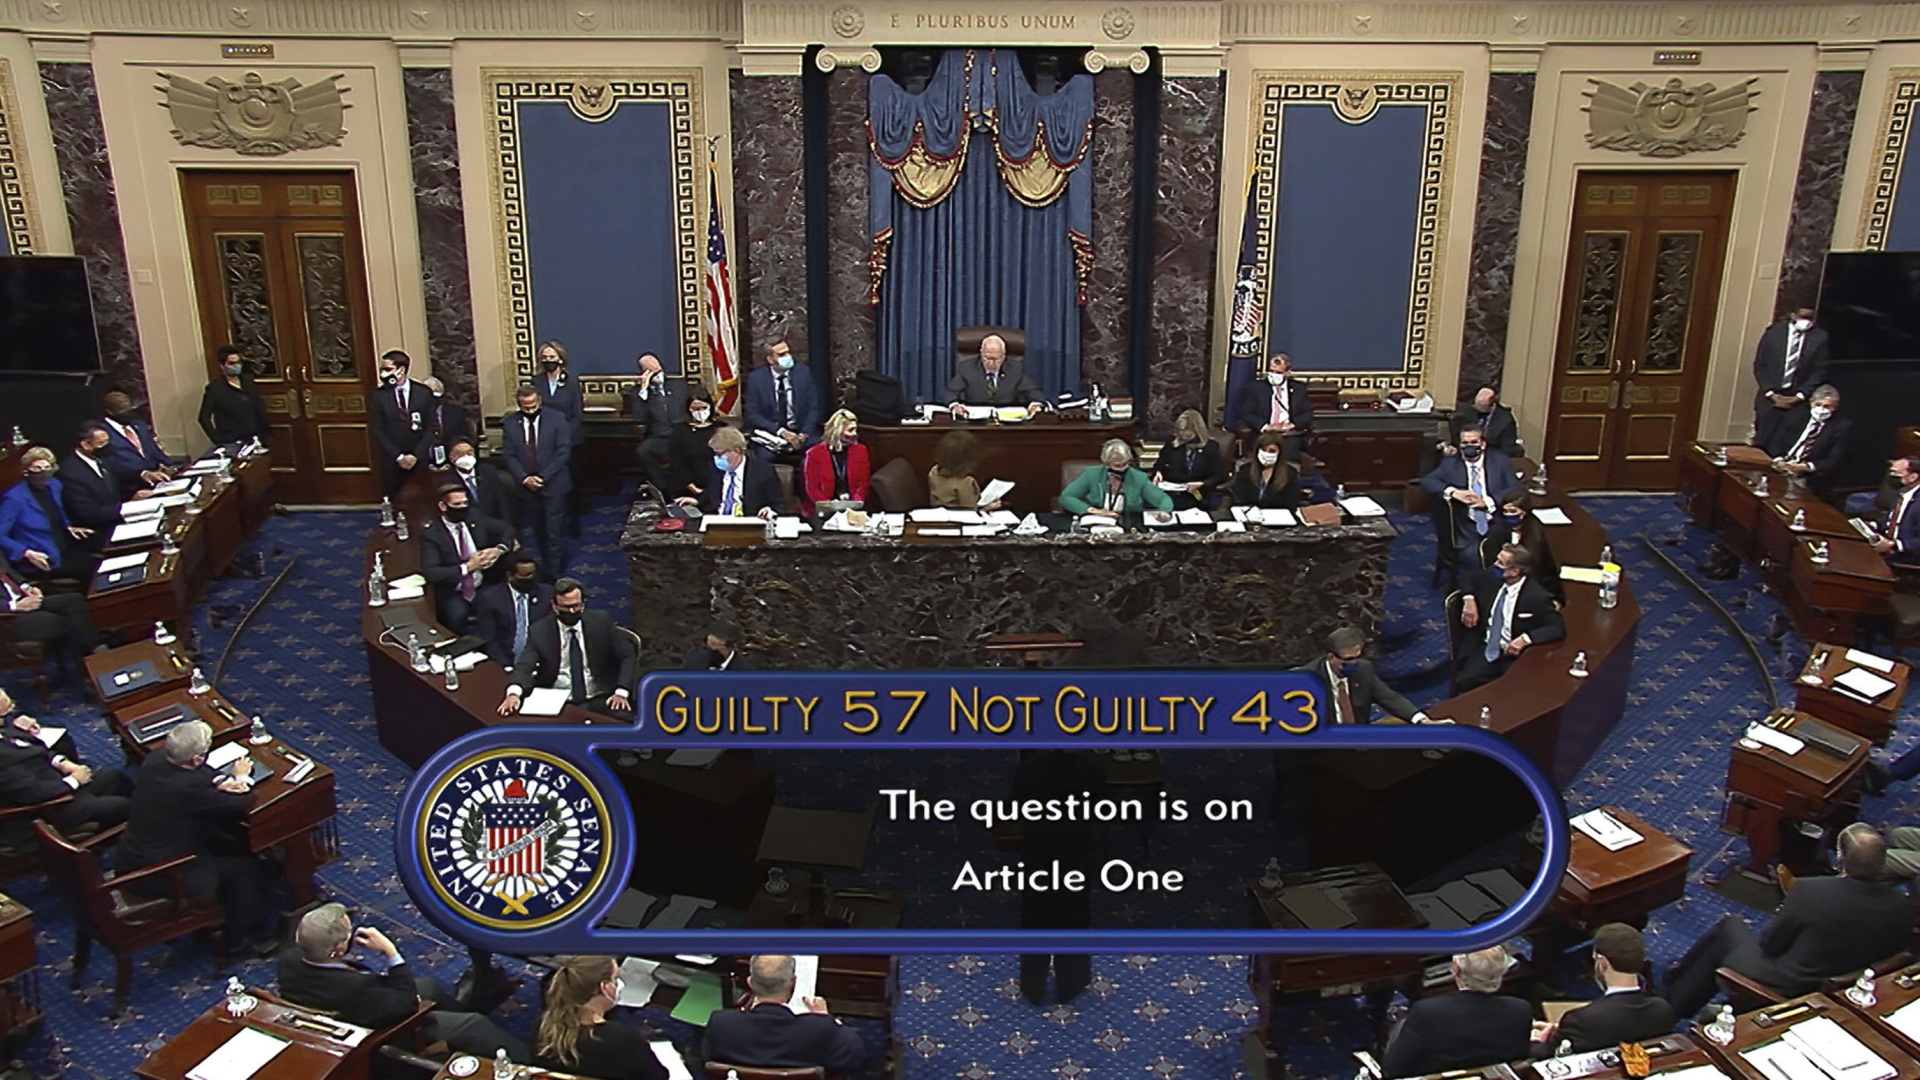 Fernsehbild zum Ergebnis der Senatsabstimmung über das Impeachmentverfahren